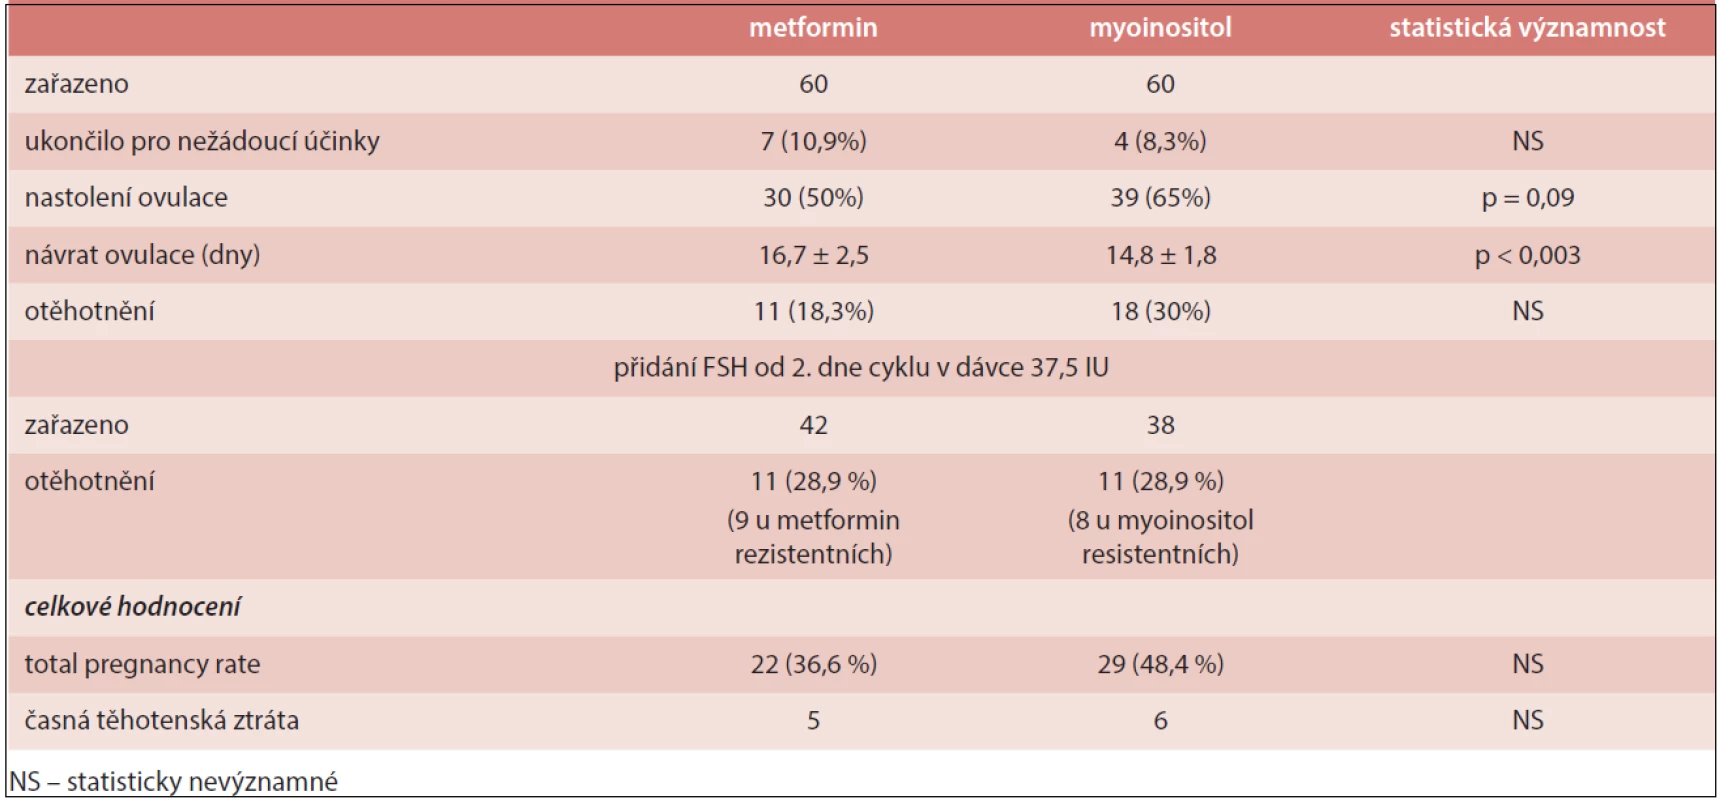 Srovnání metforminu a myoinositolu v léčbě neplodnosti